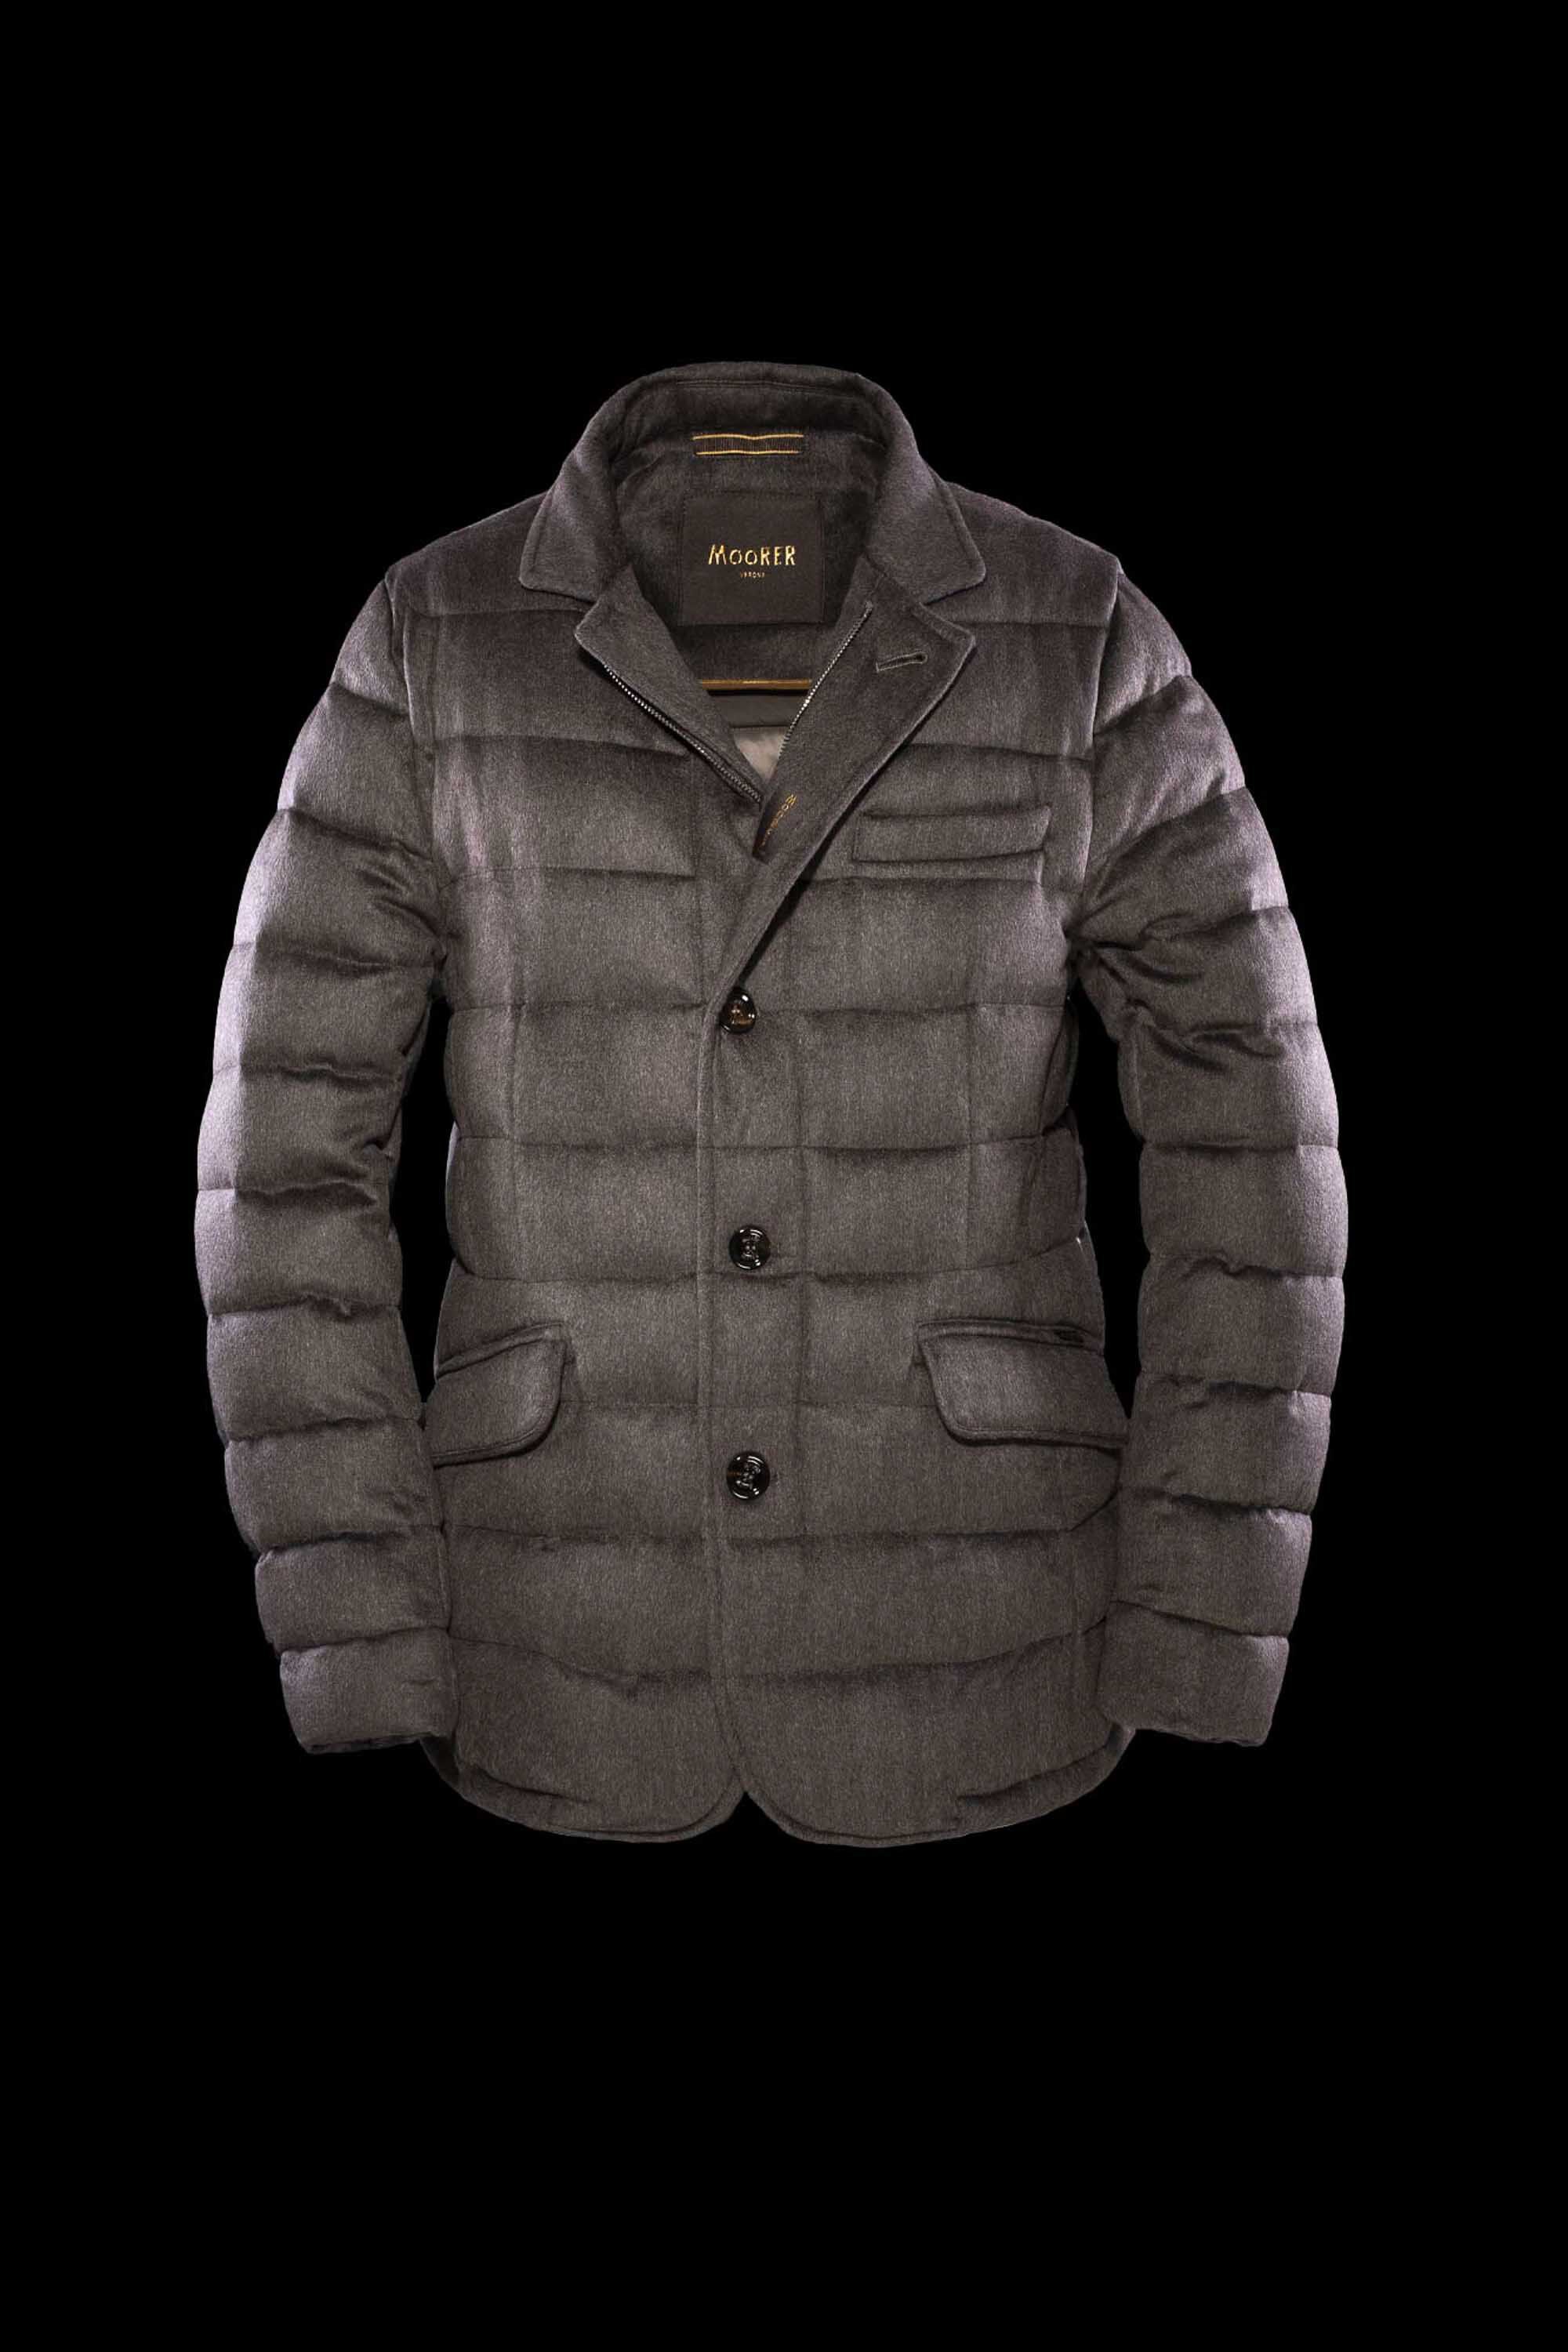 メンズ 高級ジャケット - イタリア製のメンズジャケット | MooRER®